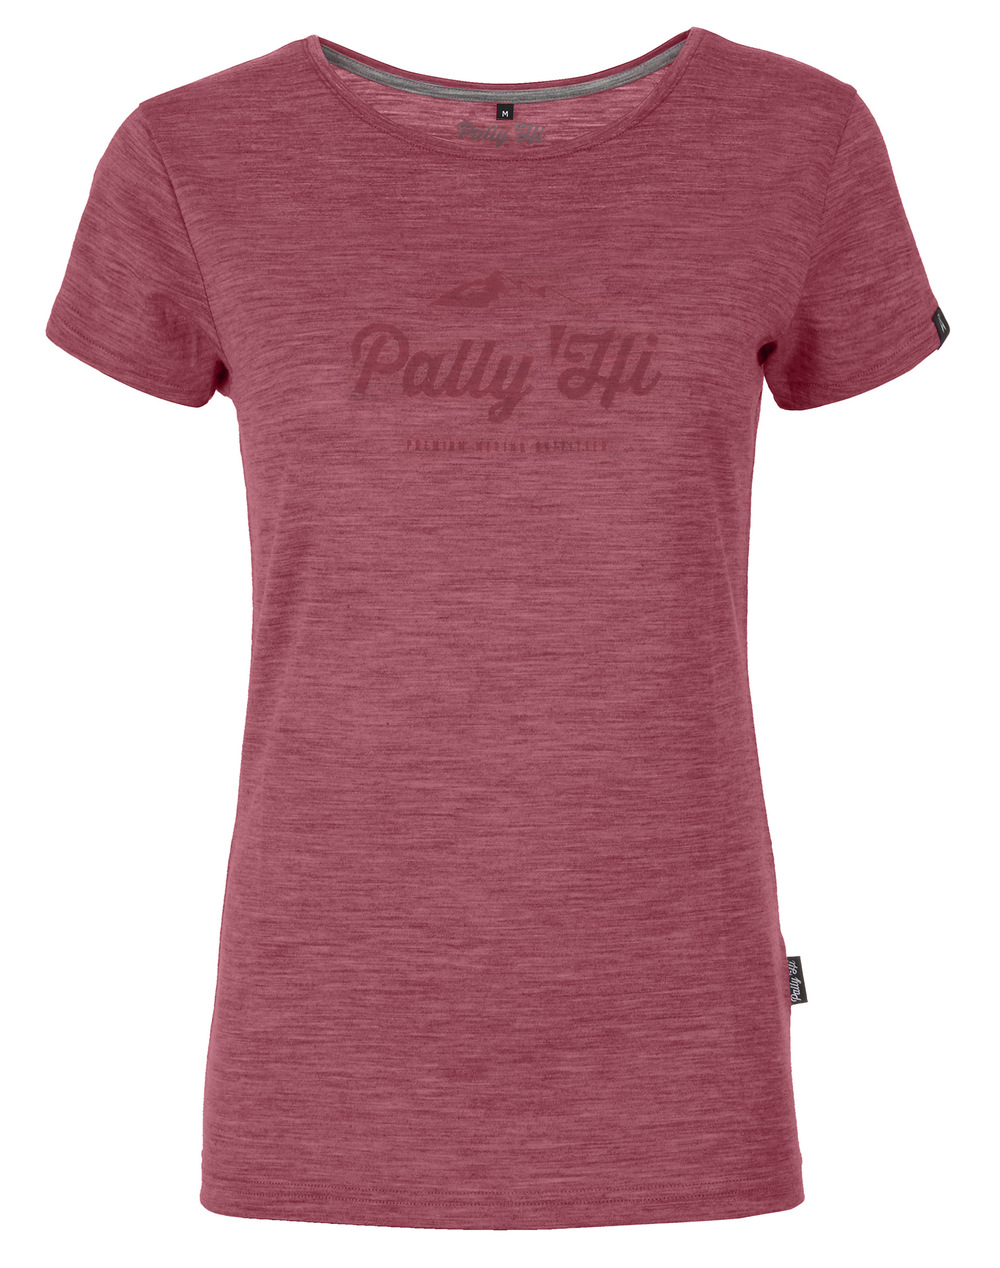 Im Test: Pally'Hi Classic Peak Logo T-Shirt